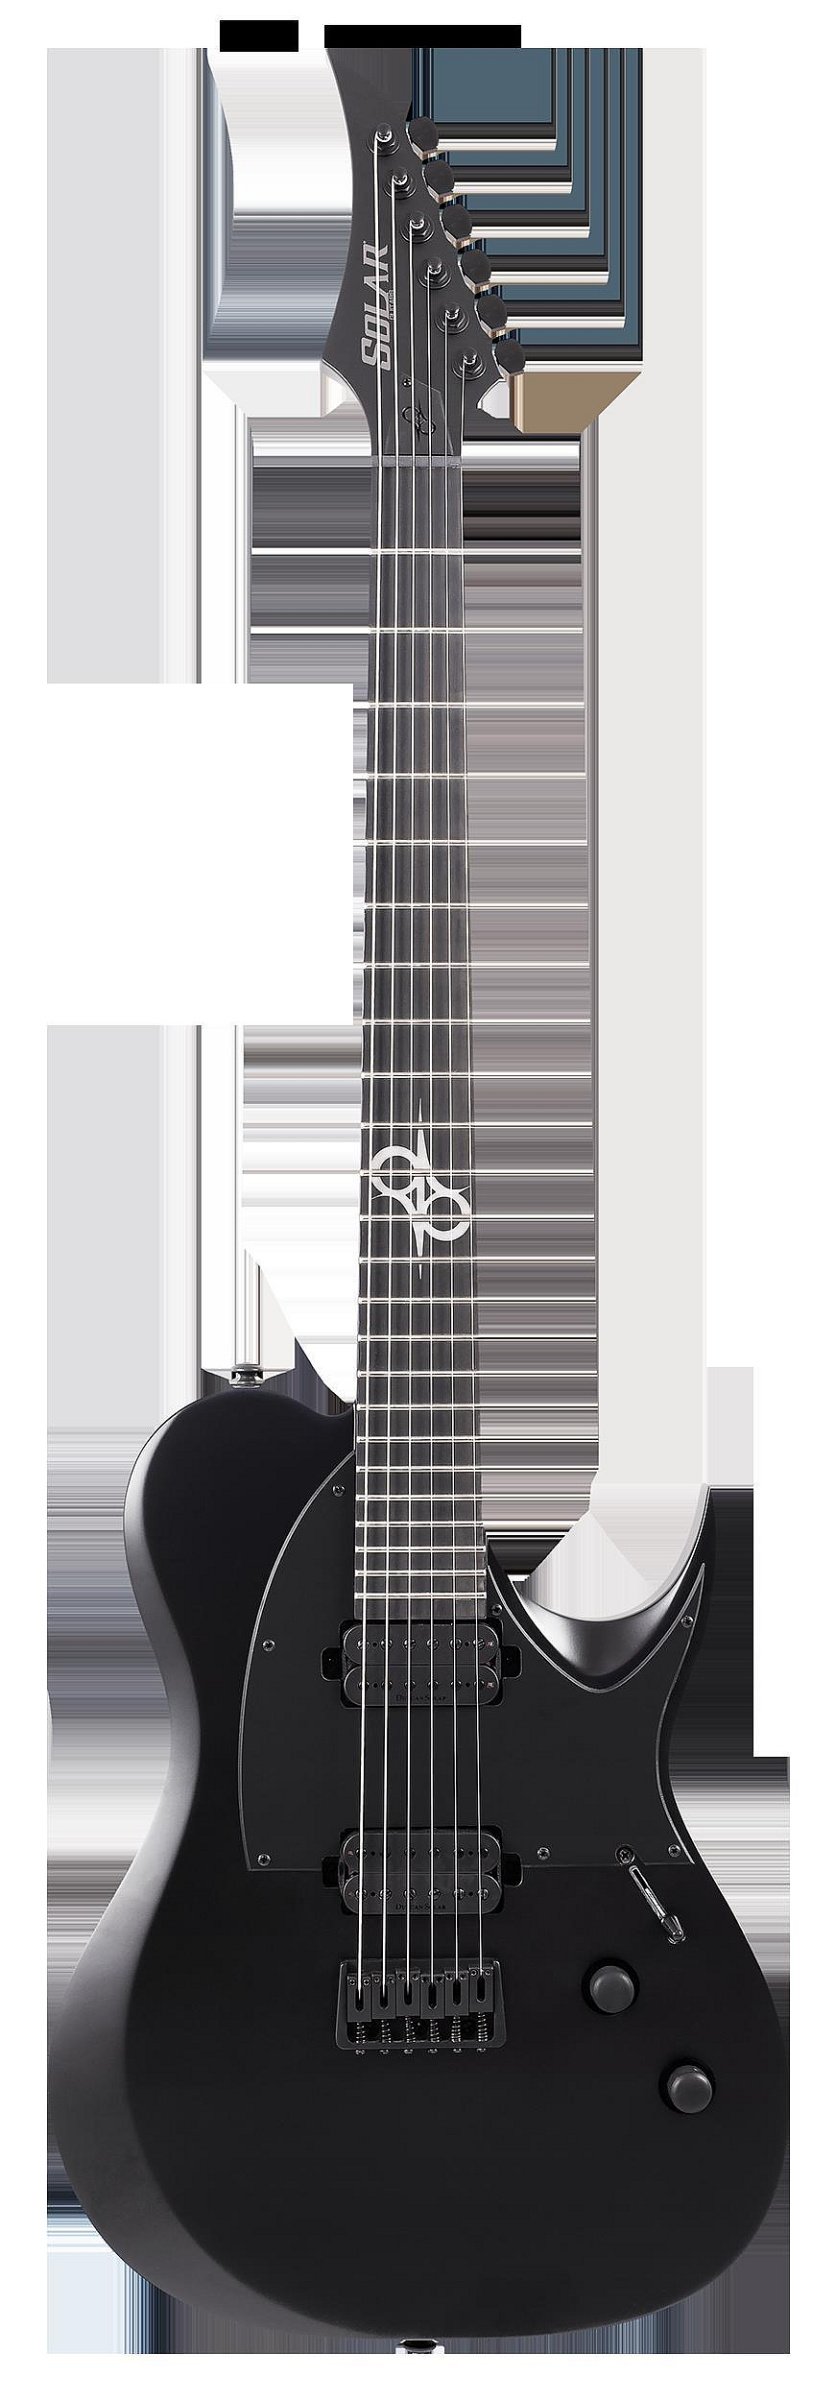 詩佳影音3月 Solar T2.6C電吉他Ola箱頭哥Tele款新派金屬重型啞光黑色前衛影音設備